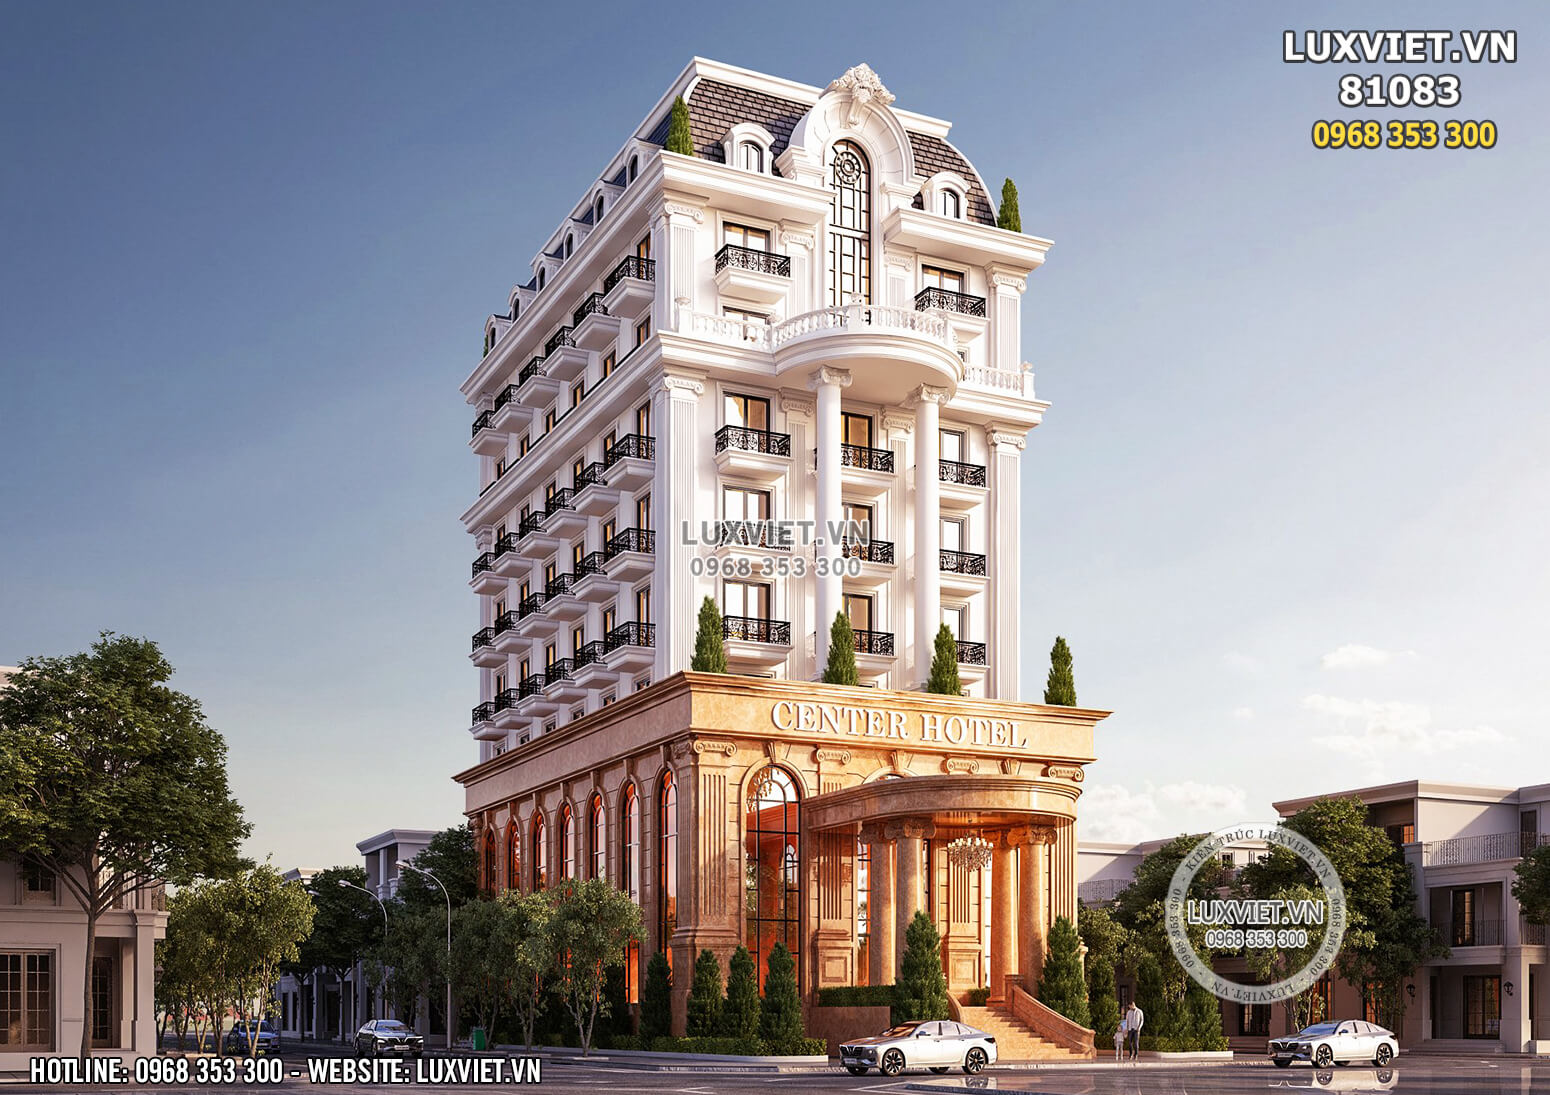 Hình ảnh: Thiết kế khách sạn tân cổ điển đẹp tại Đà Lạt - LV 81083